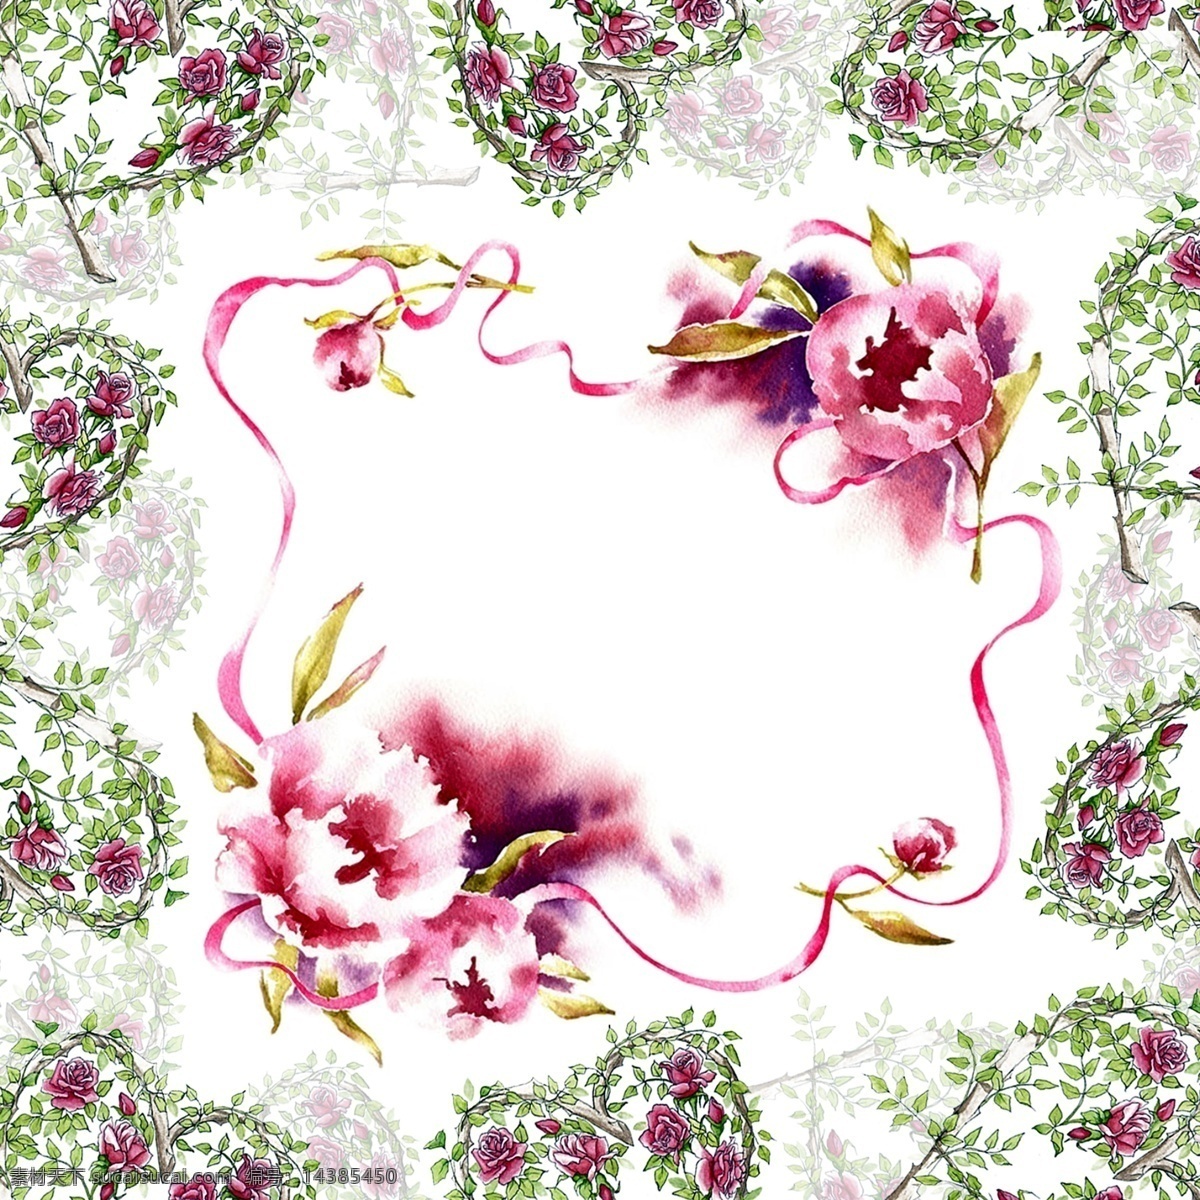 手绘 水彩 花卉 花环 相框 模版 手绘花卉花环 相框模版